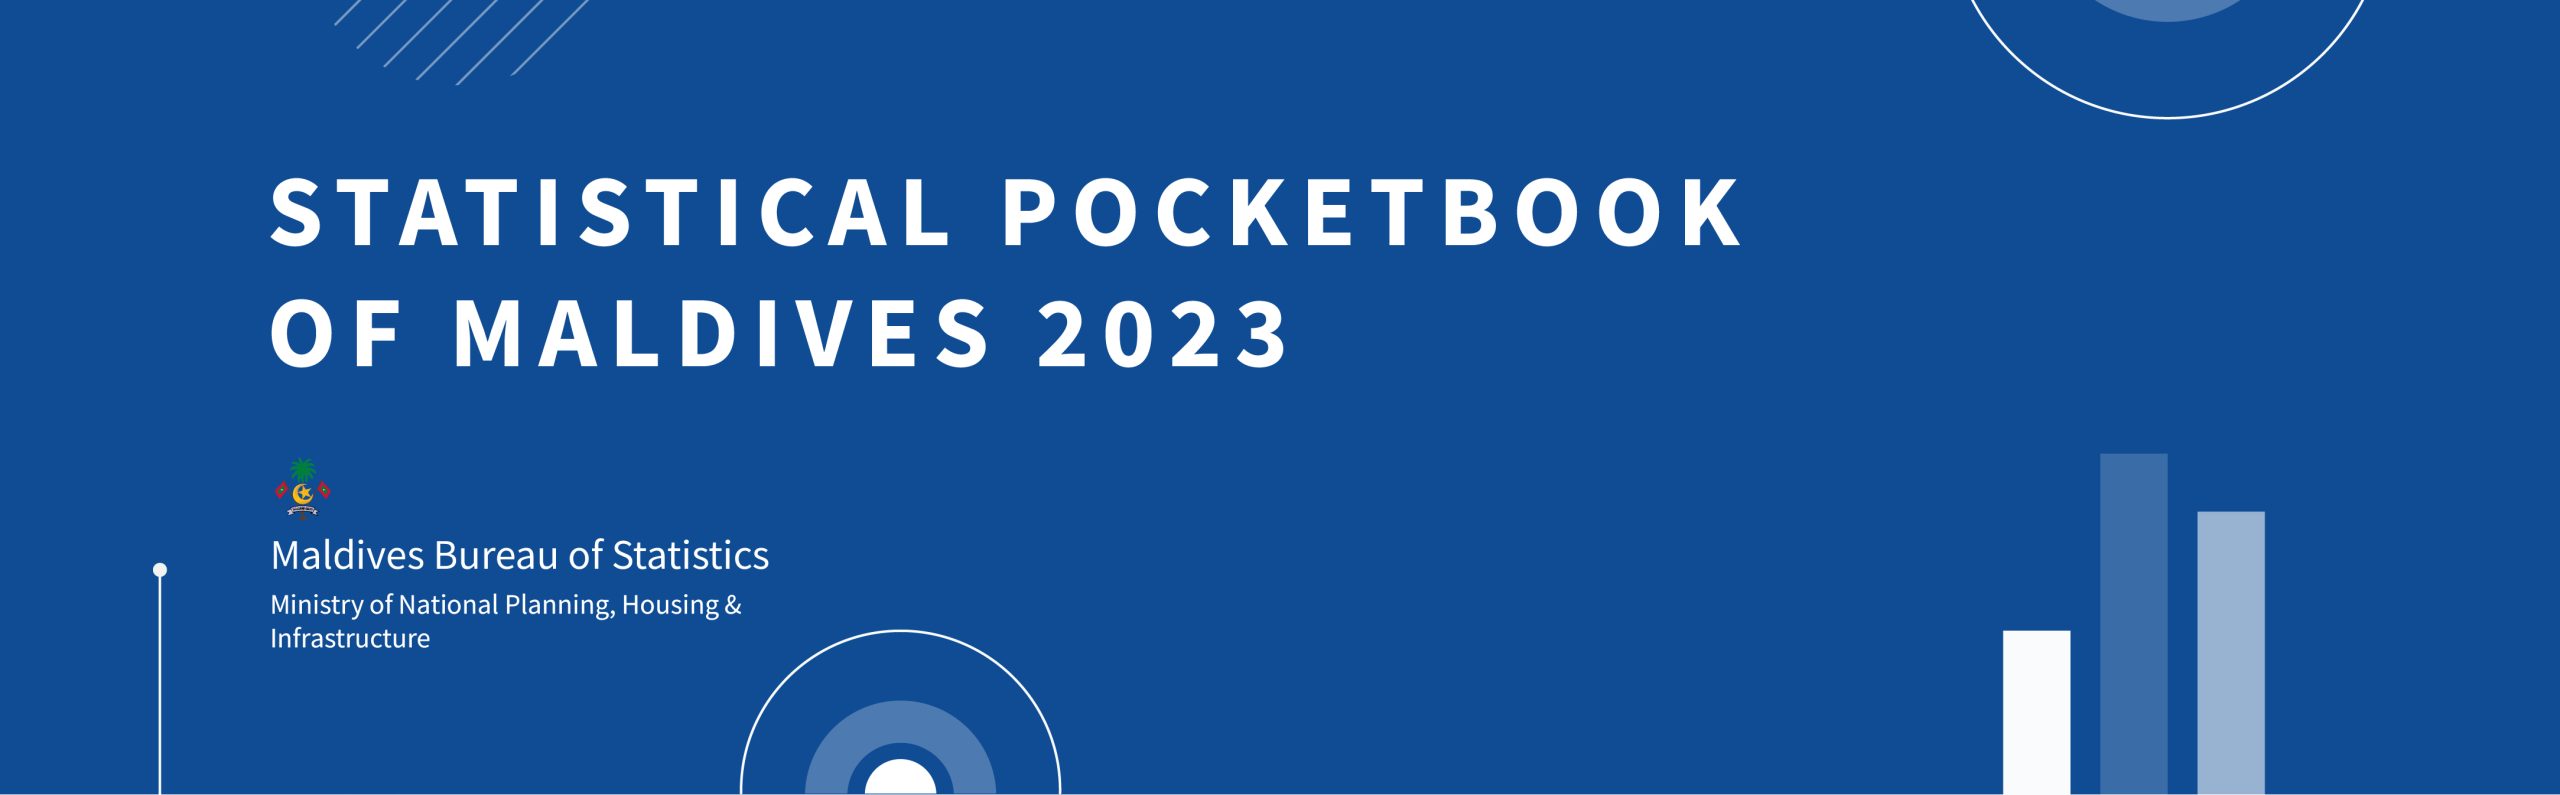 Statistical Pocketbook of Maldives 2023